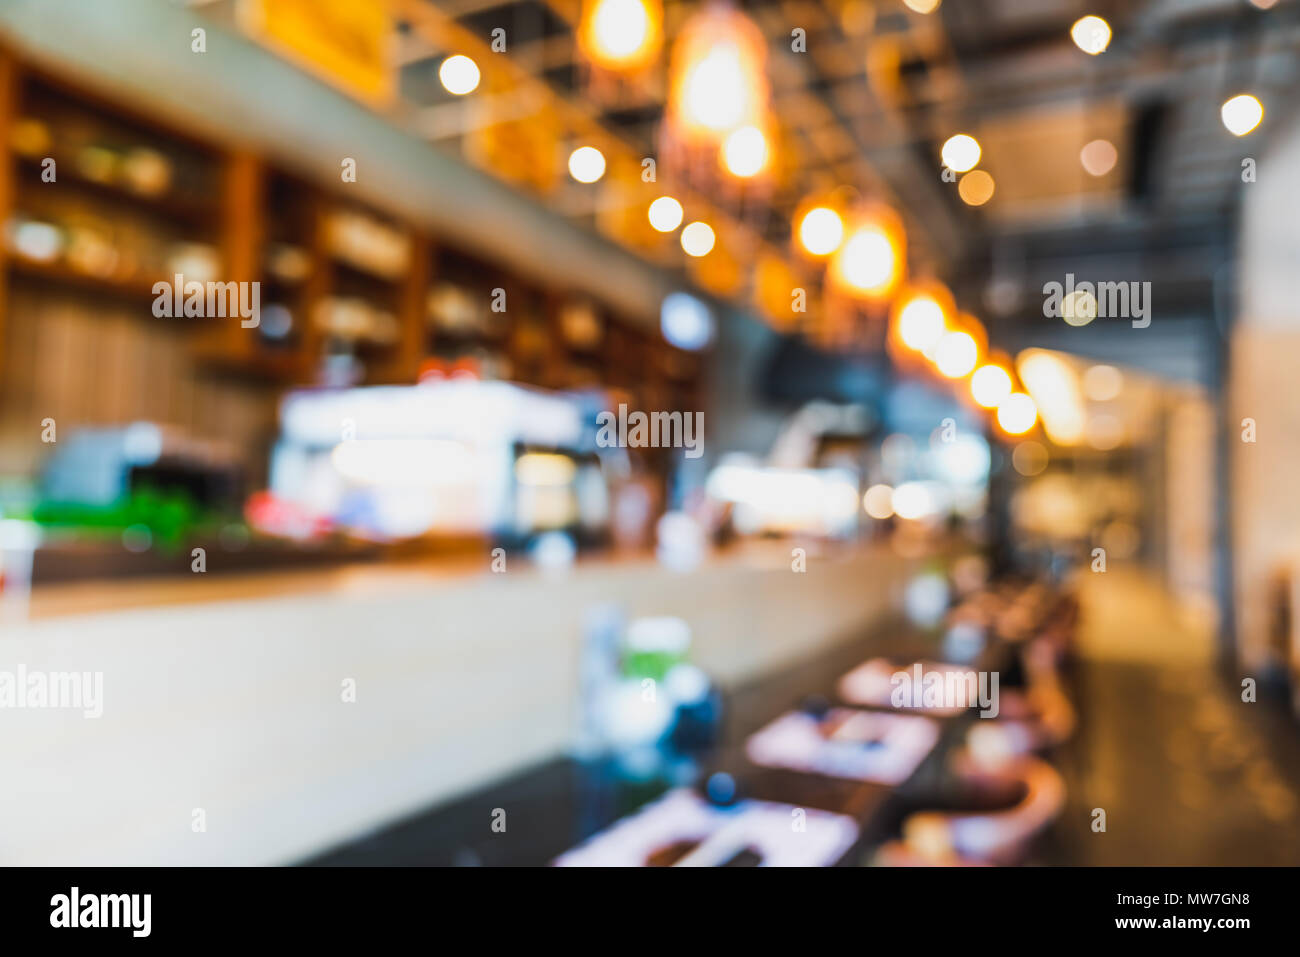 Sfocate e sfocati sullo sfondo di un moderno ristorante Giapponese di vuoto del banco bar con bokeh luci. Industria alimentare e delle bevande, caffetteria o cafe Foto Stock